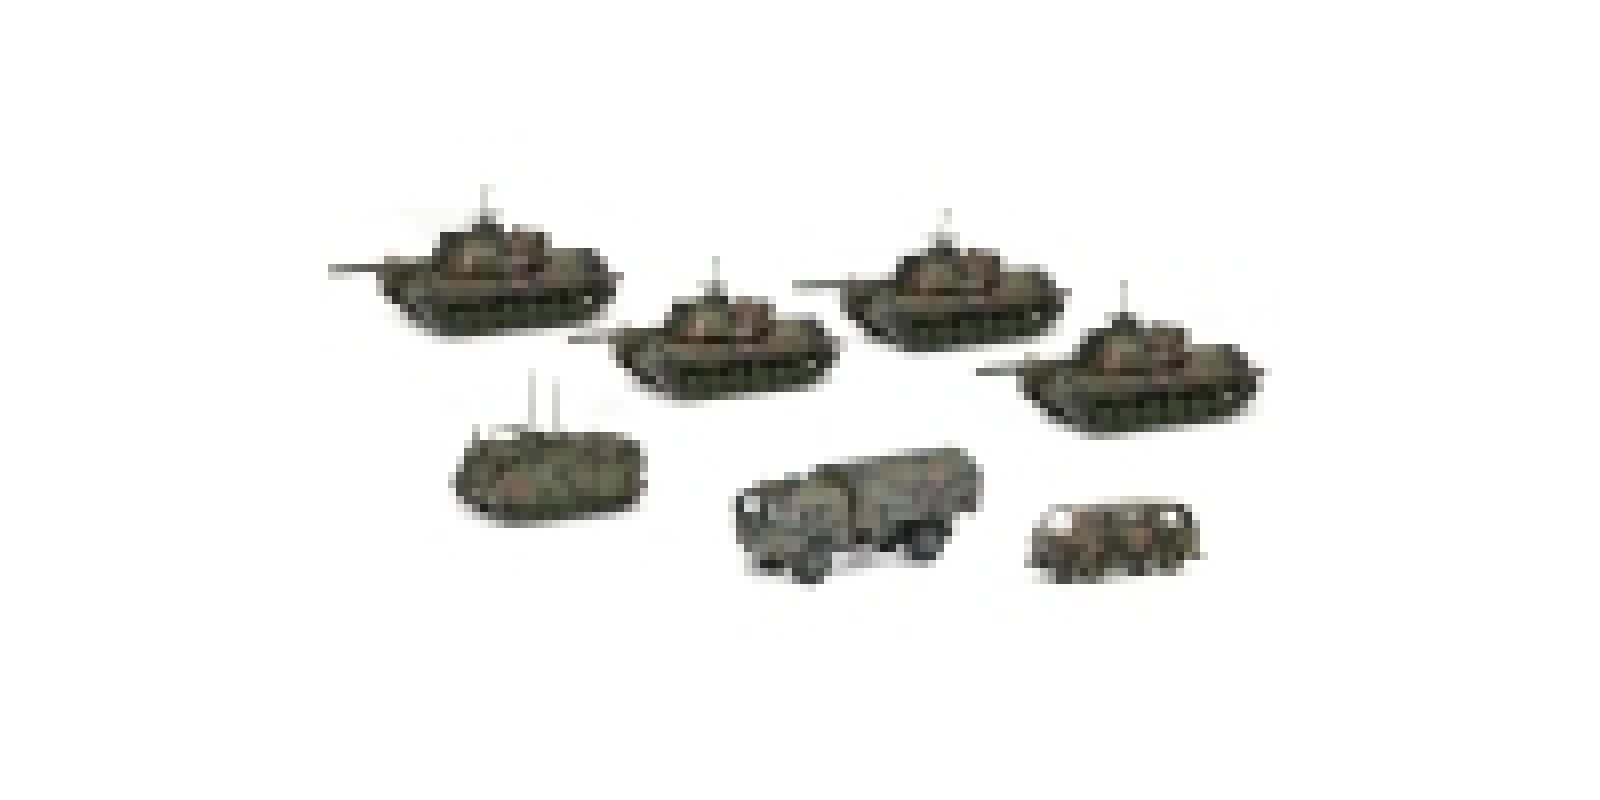 SC452643300 Tank companie "Bundeswehr", camouflaged